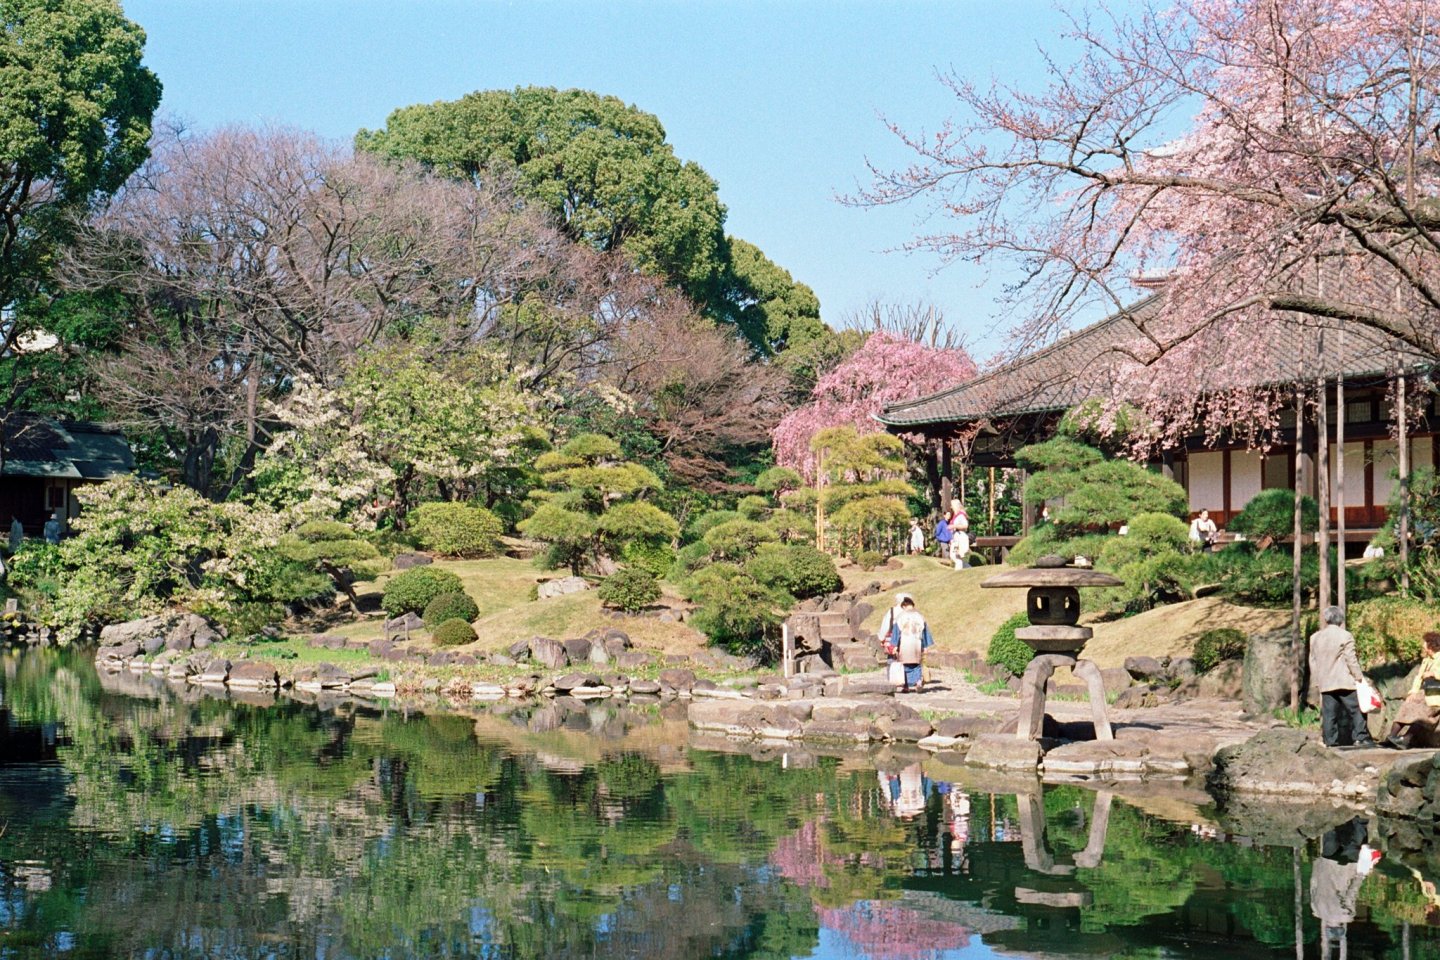 Sakura season at Denboin Garden